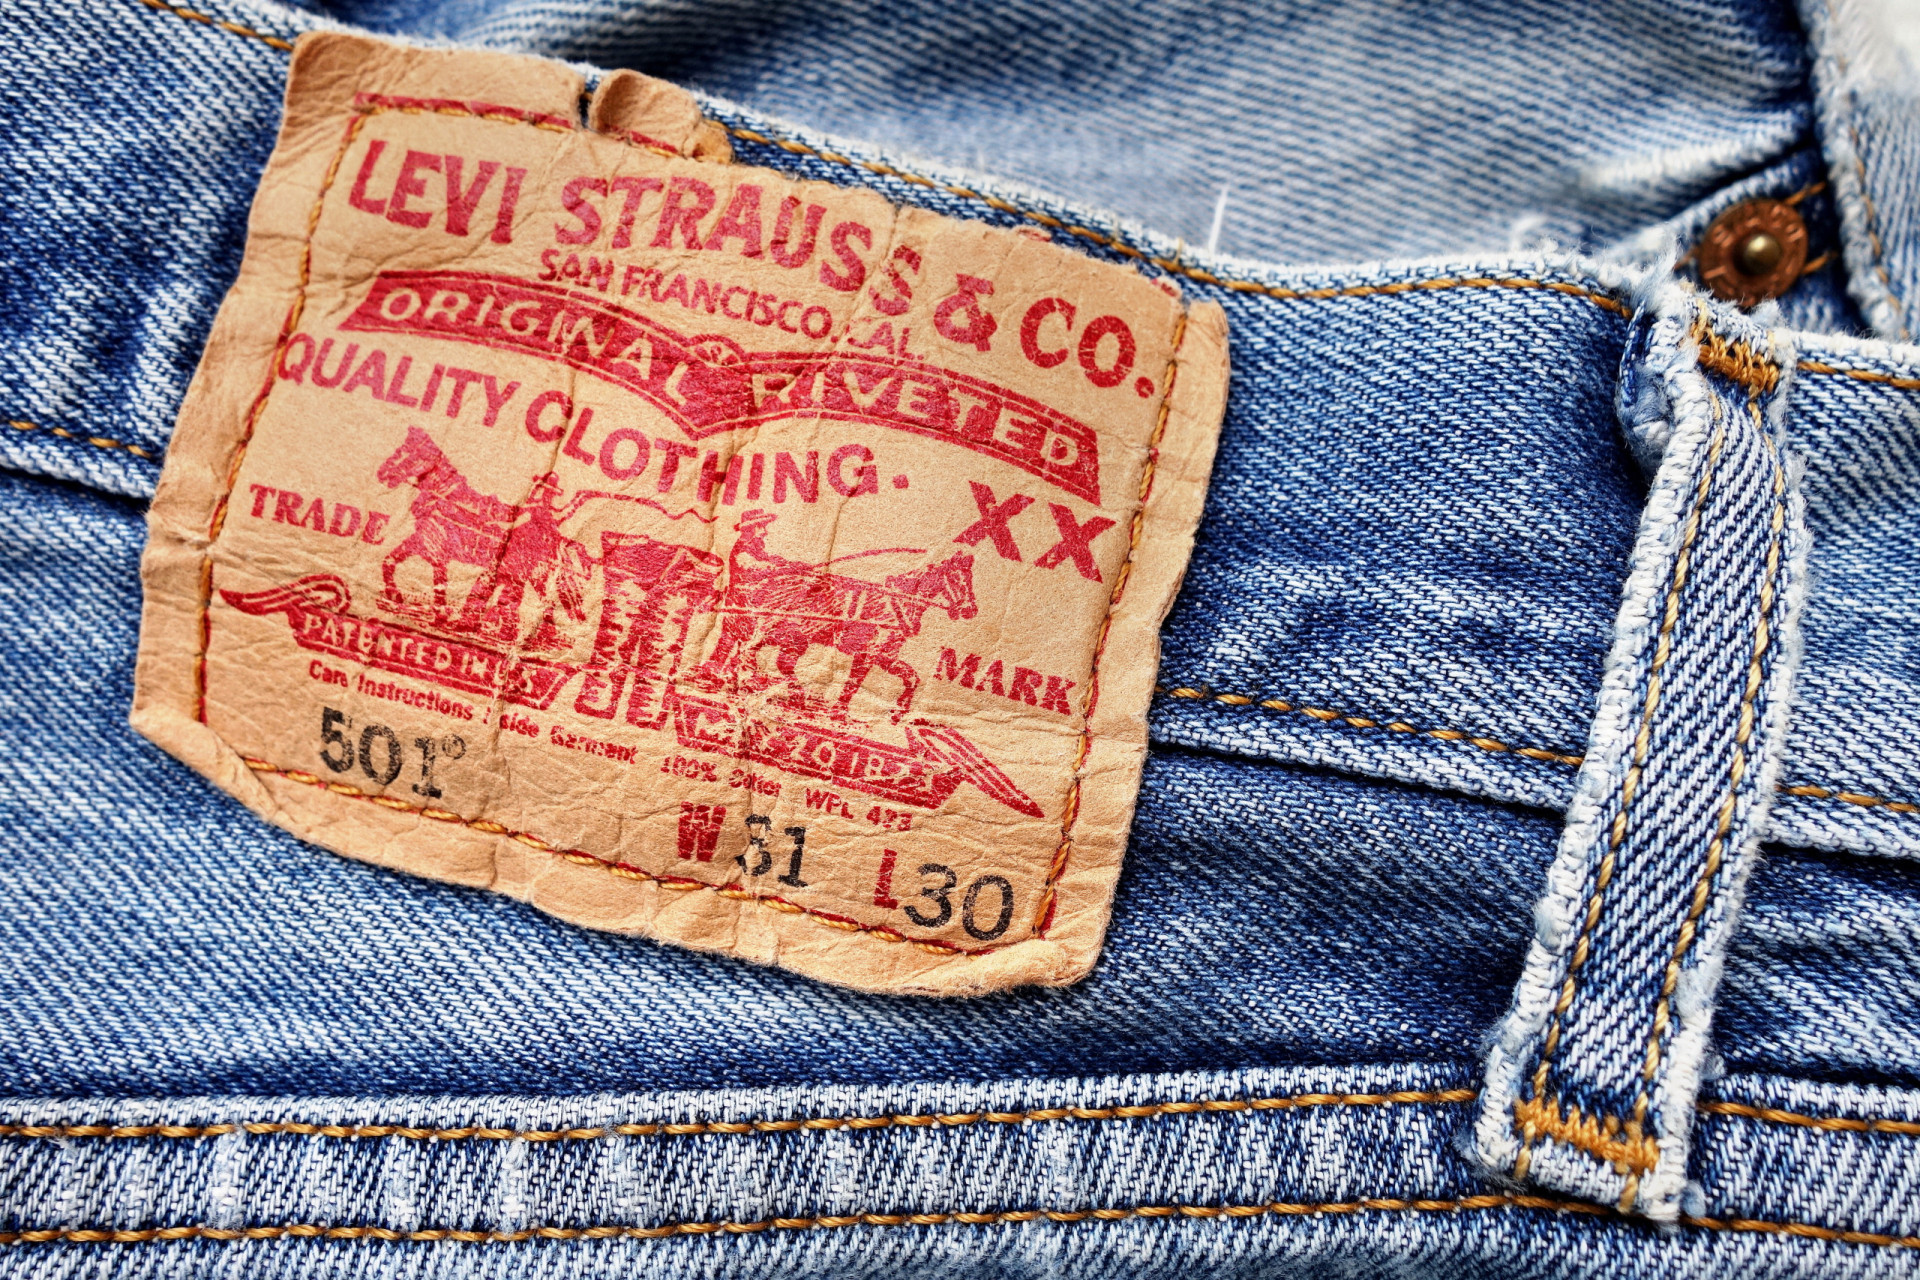 <p>Levi Strauss & Co. est la plus ancienne marque de jeans au monde. Fondée en 1853 par Levi Strauss à San Francisco, Levi's reste une marque américaine emblématique reconnue dans le monde entier pour ses jeans.</p> <p>Sources: (Conde Nast Traveler) (National Geographic) (AntiquityNOW)</p> <p>Découvrez aussi: <a href="https://www.starsinsider.com/fr/mode/464872/lhistoire-du-jeans-de-nimes-au-monde-entier">L'histoire du jeans : de Nîmes au monde entier</a></p>